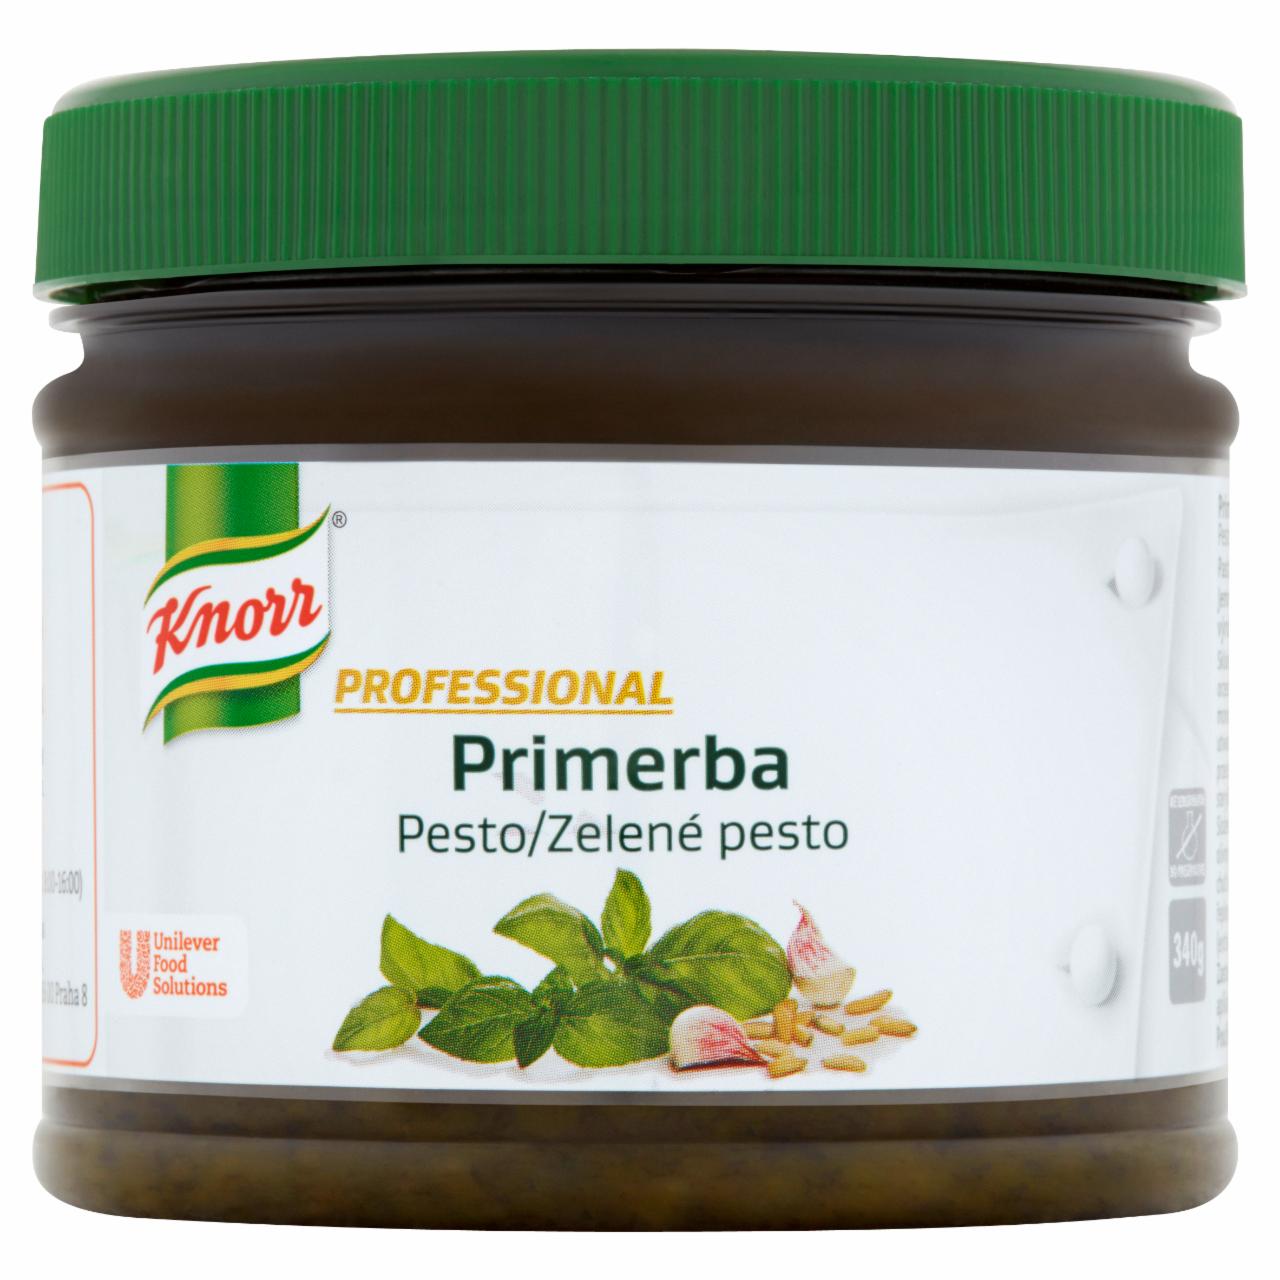 Zdjęcia - Knorr Professional Primerba pesto Pasta ziołowa do przyprawiania potraw 340 g